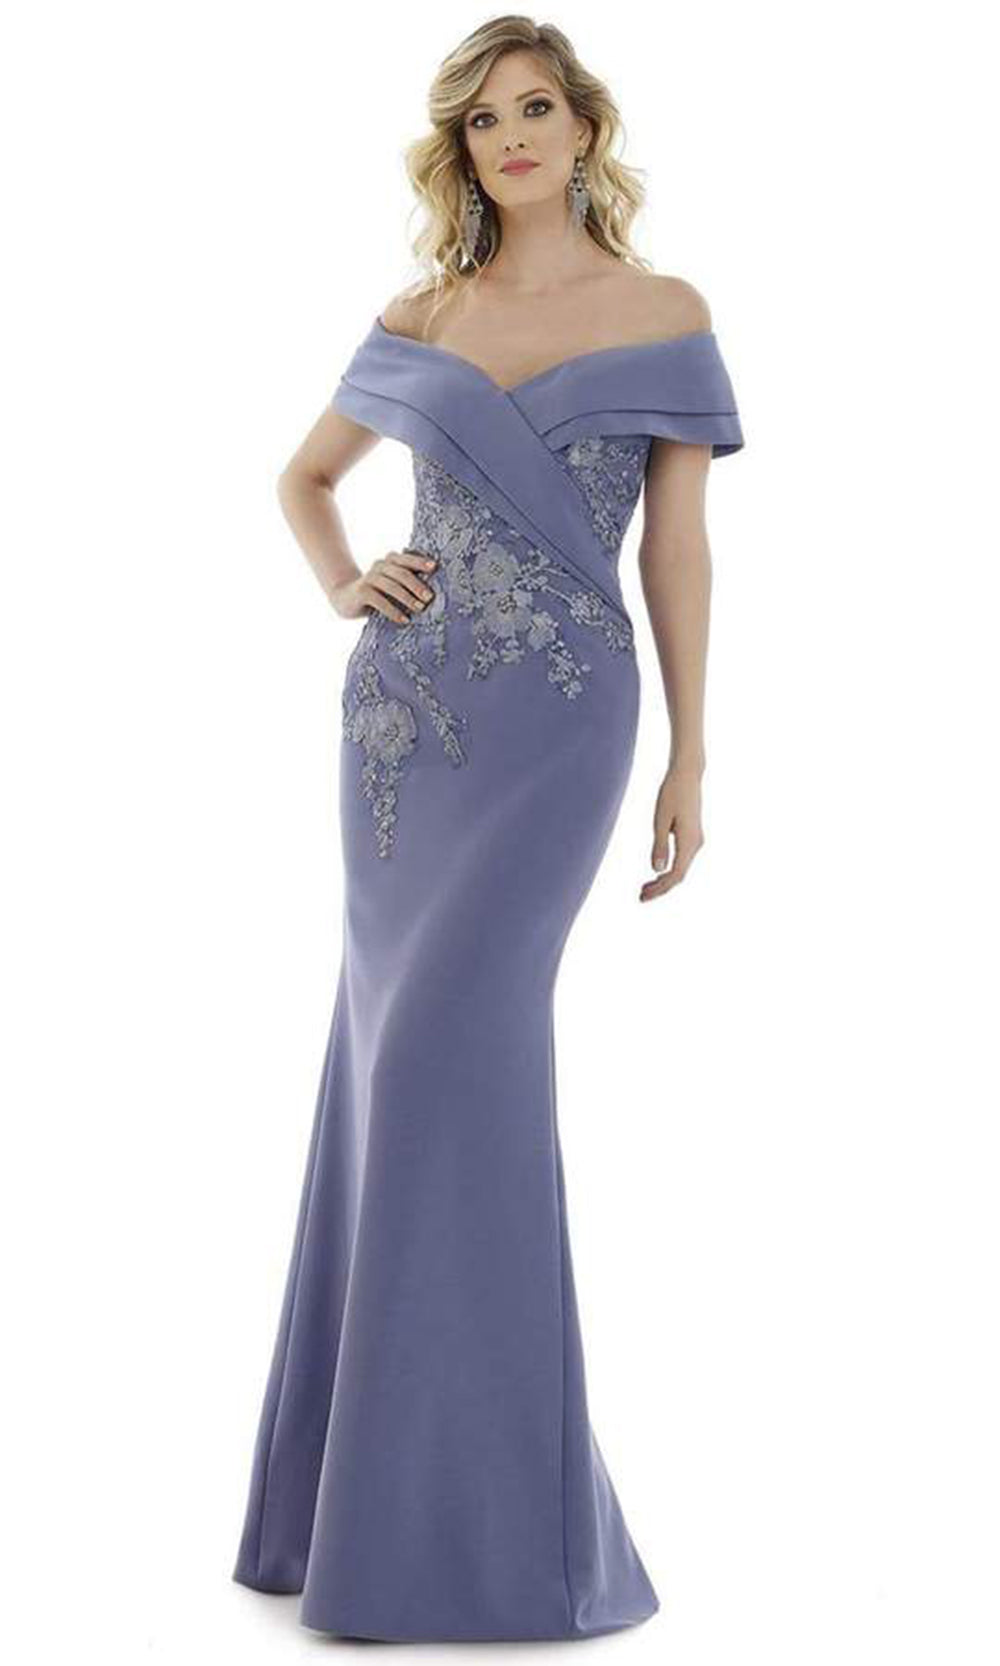 Gia Franco - Floral Off Shoulder Mermaid Dress In Blue